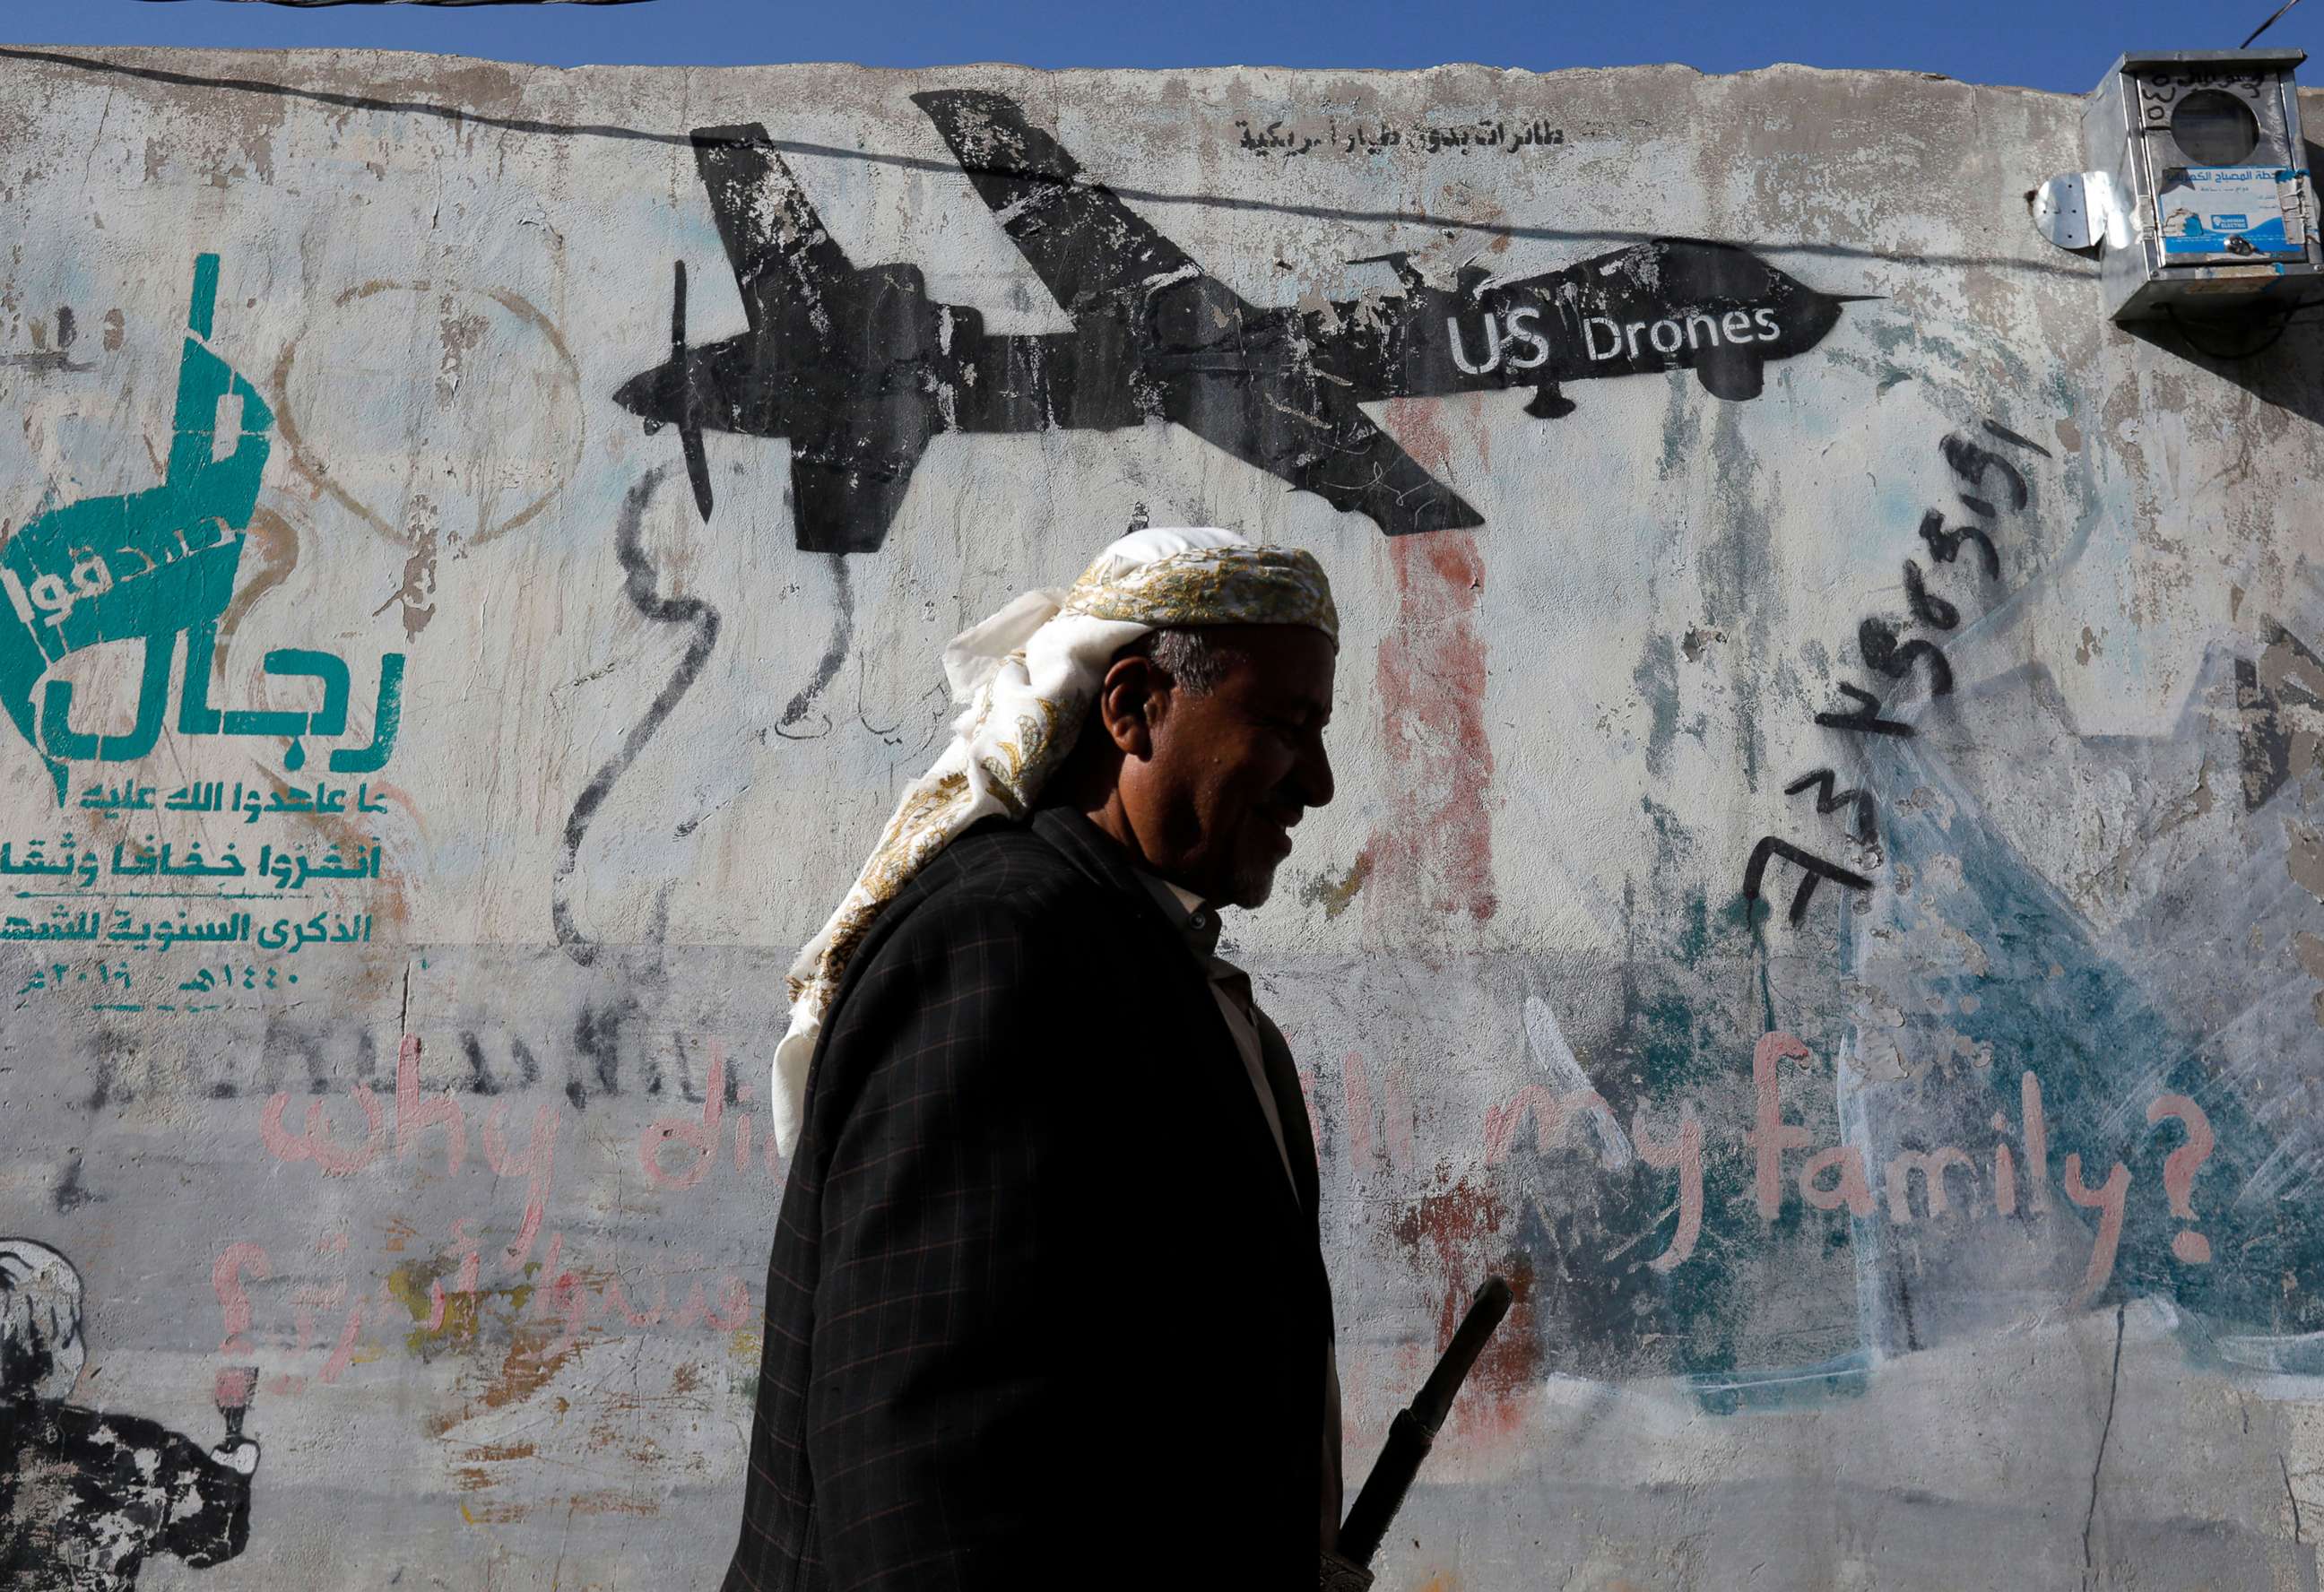 PHOTO: A Yemeni walks past graffiti depicting a U.S. drone, after a raid killed an al-Qaeda leader, Qassim al-Rimi, in Yemen, in Sana'a, Yemen, Feb. 1, 2020.